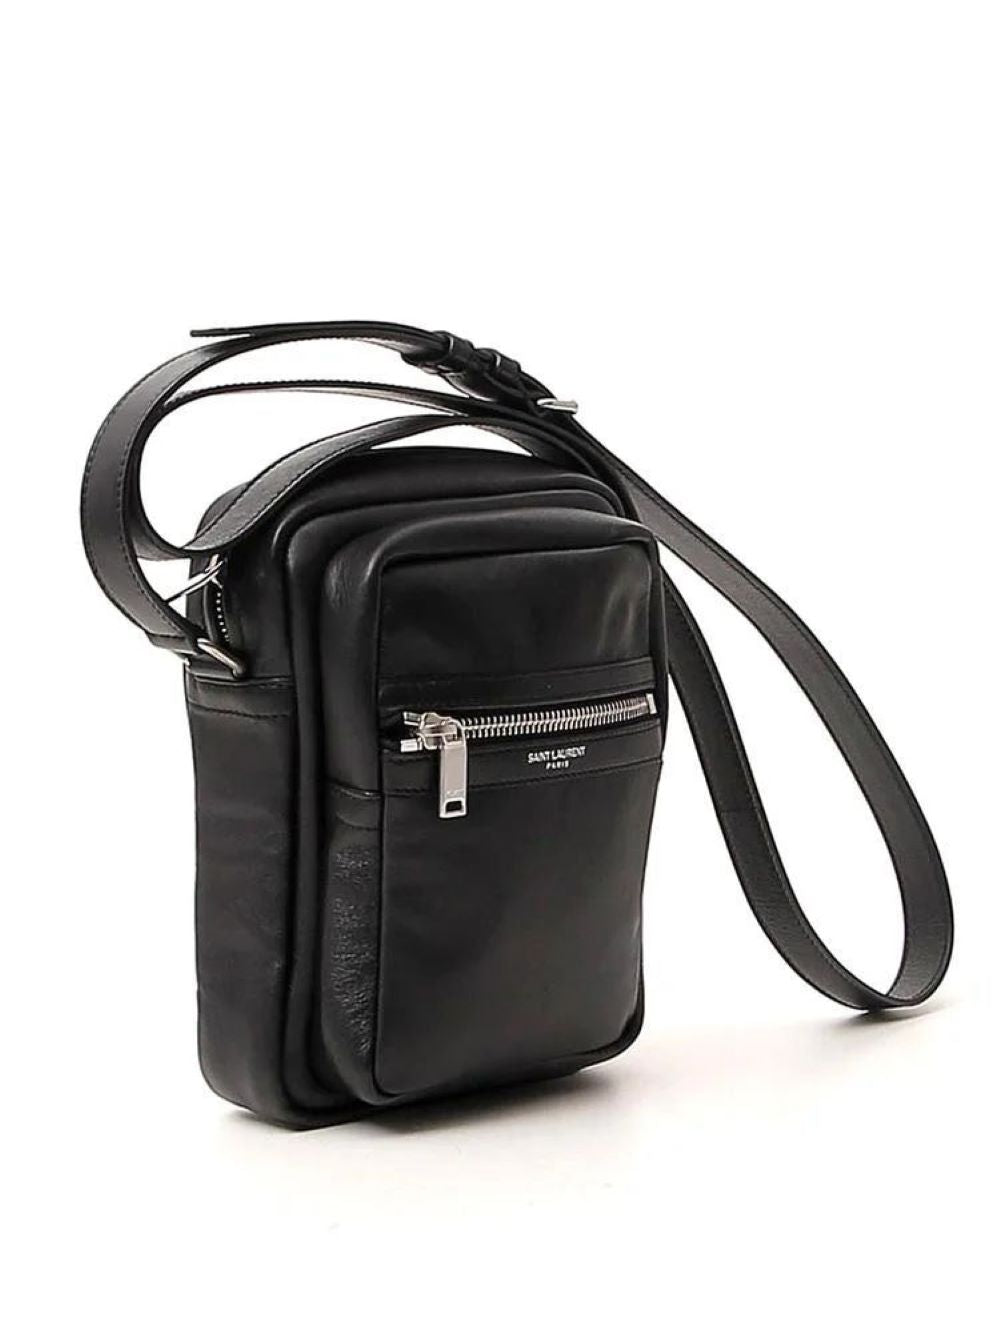 SAINT LAURENT Luxurious Black Leather Pouch Bag for Men